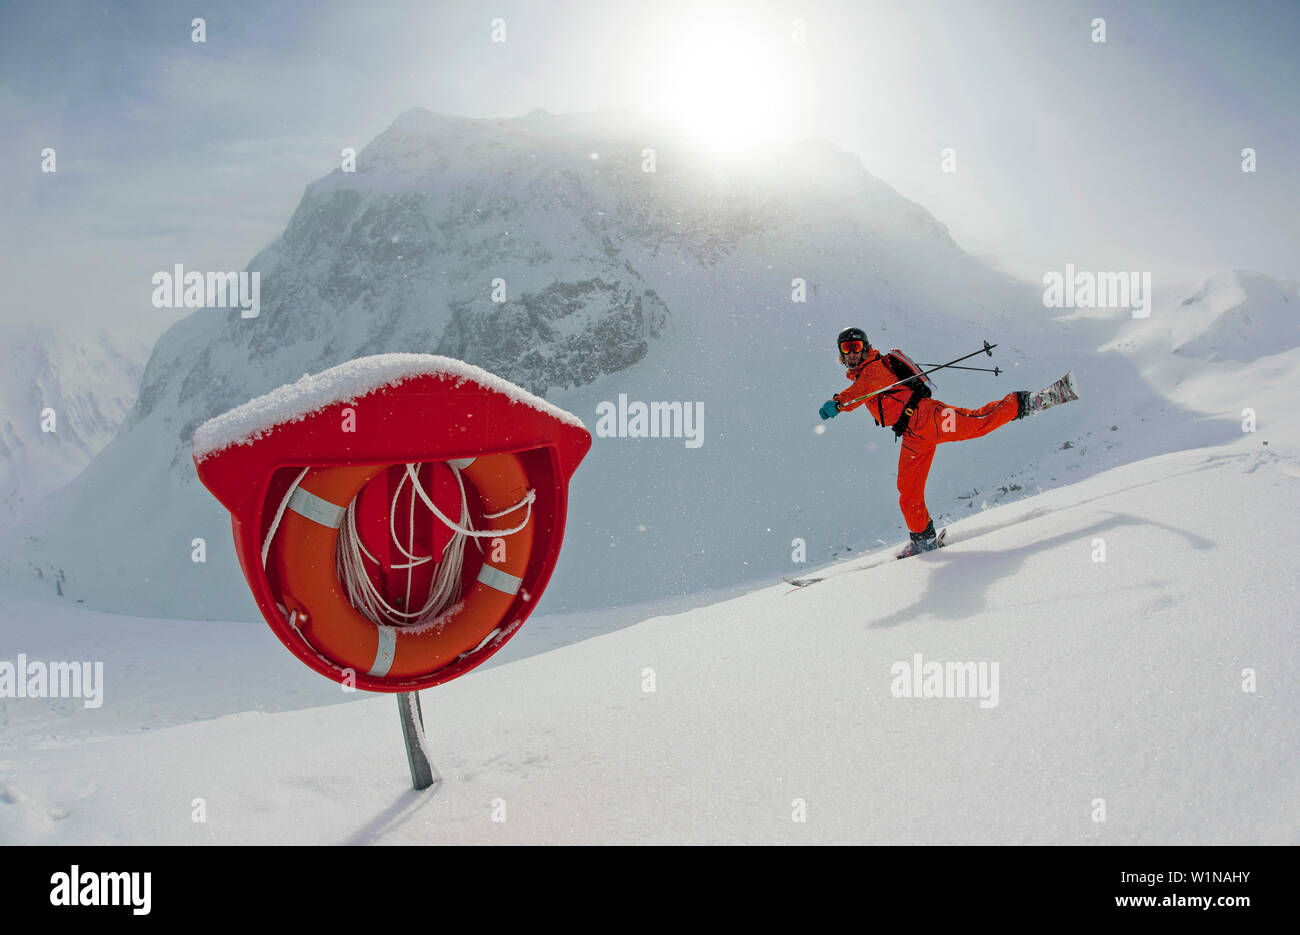 Lifebelt, skier in background, Gargellen, Montafon, Vorarlberg, Austria Stock Photo